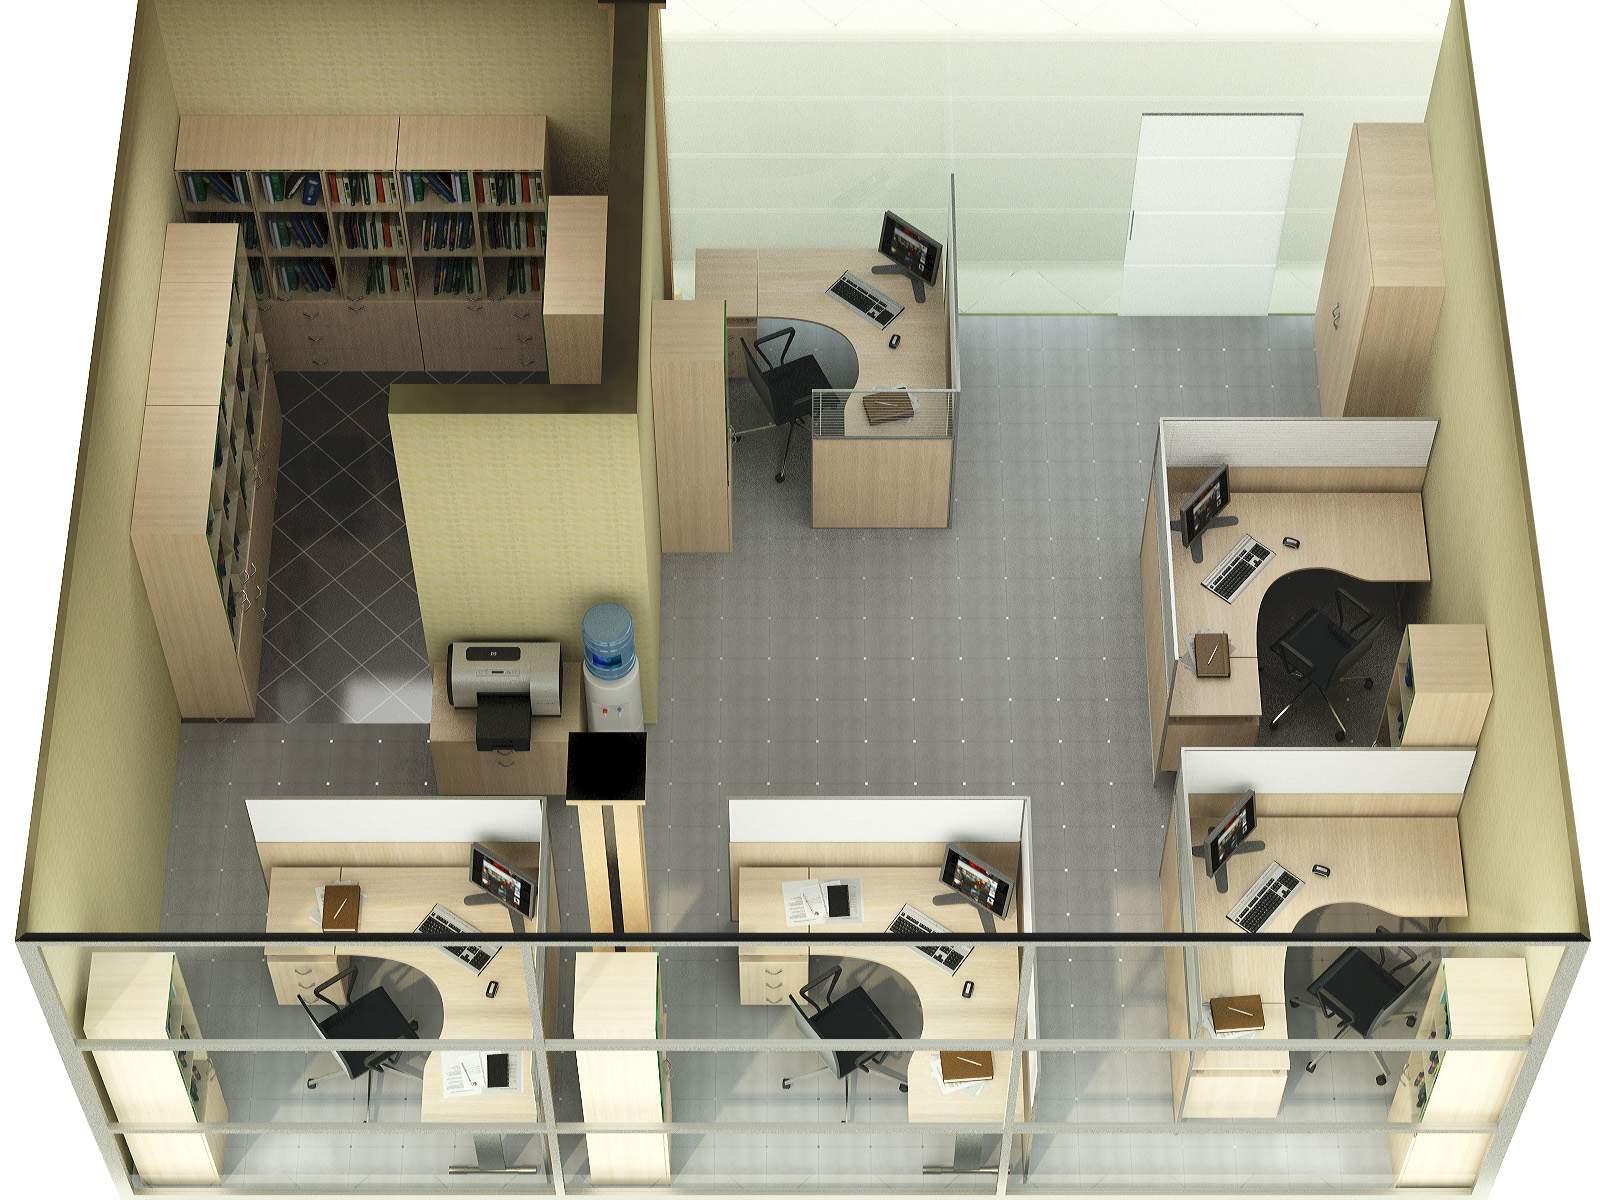 Планировка кабинета в офисе: Планировка офисов – open space, кабинетная или смешанная? – Планировка офиса (90 фото) - правильная организация и современный дизайн